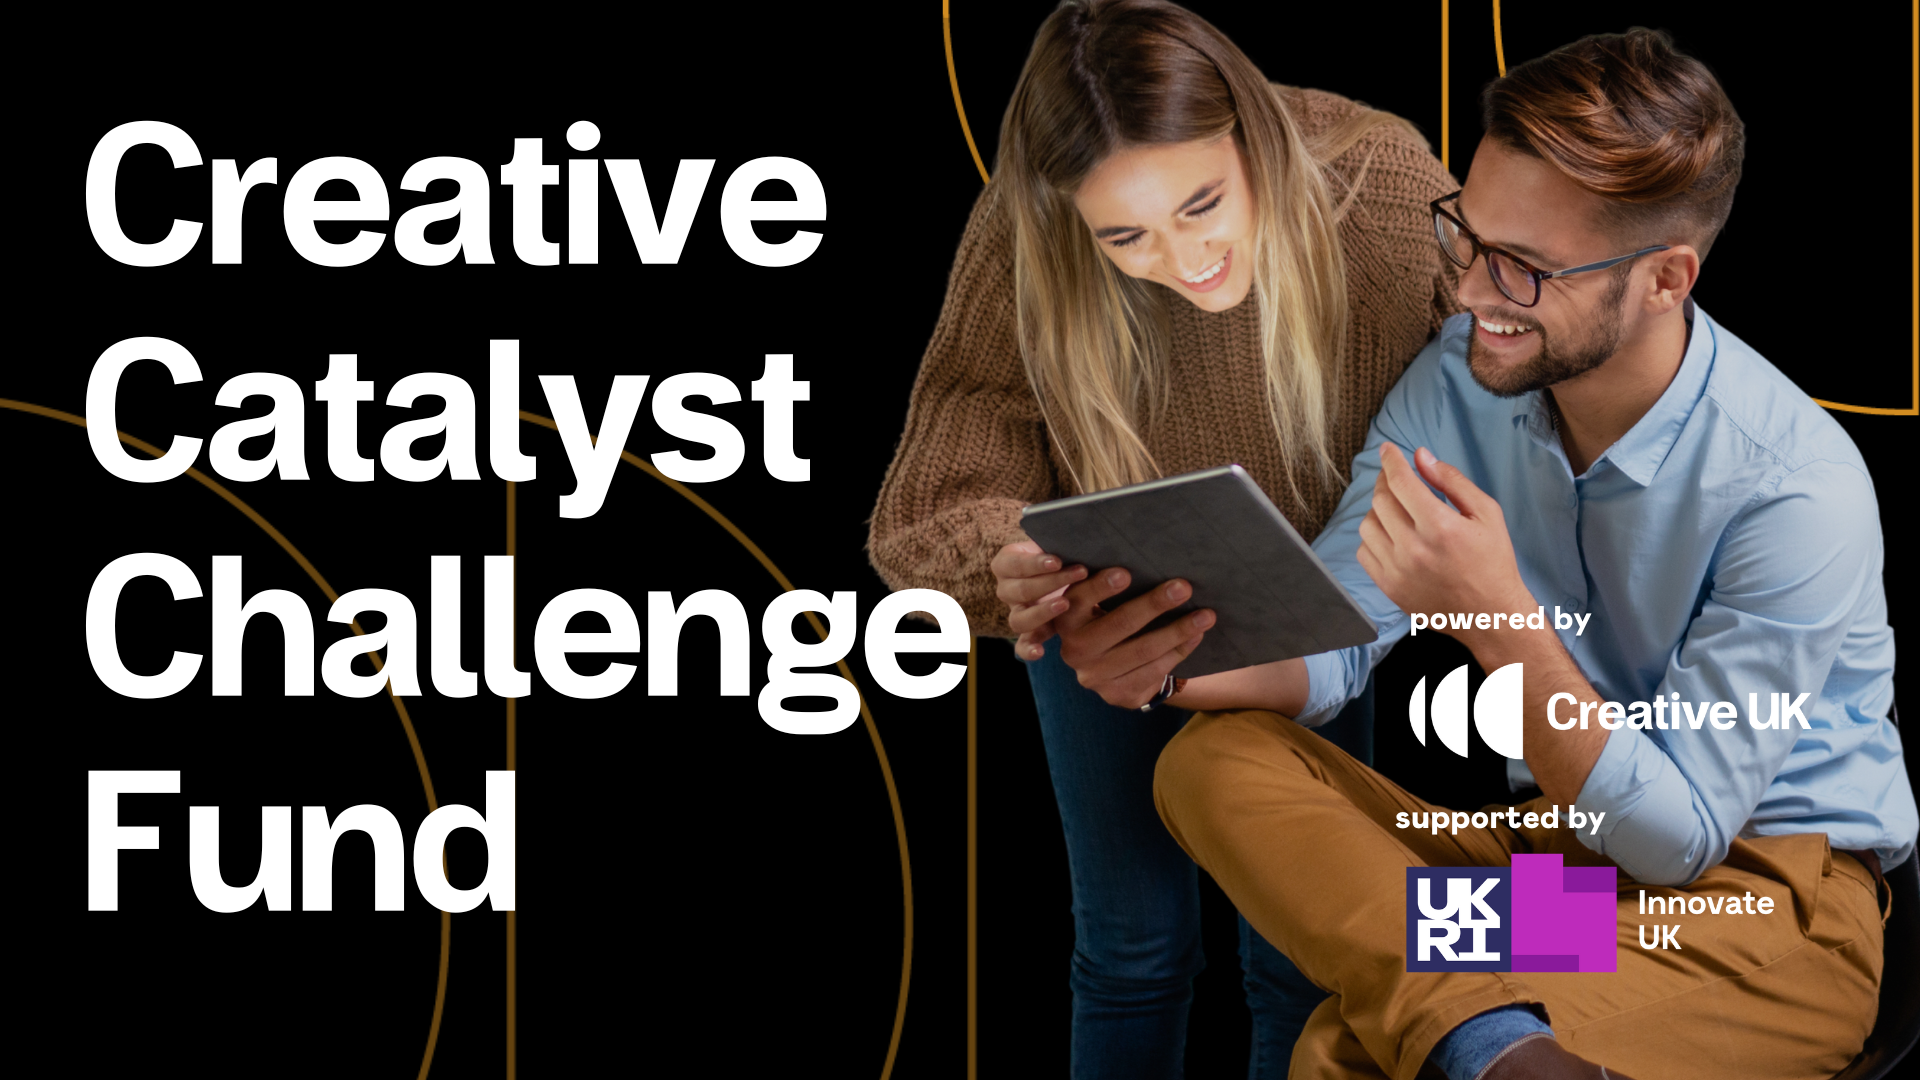 Creative Catalyst Challenge Fund